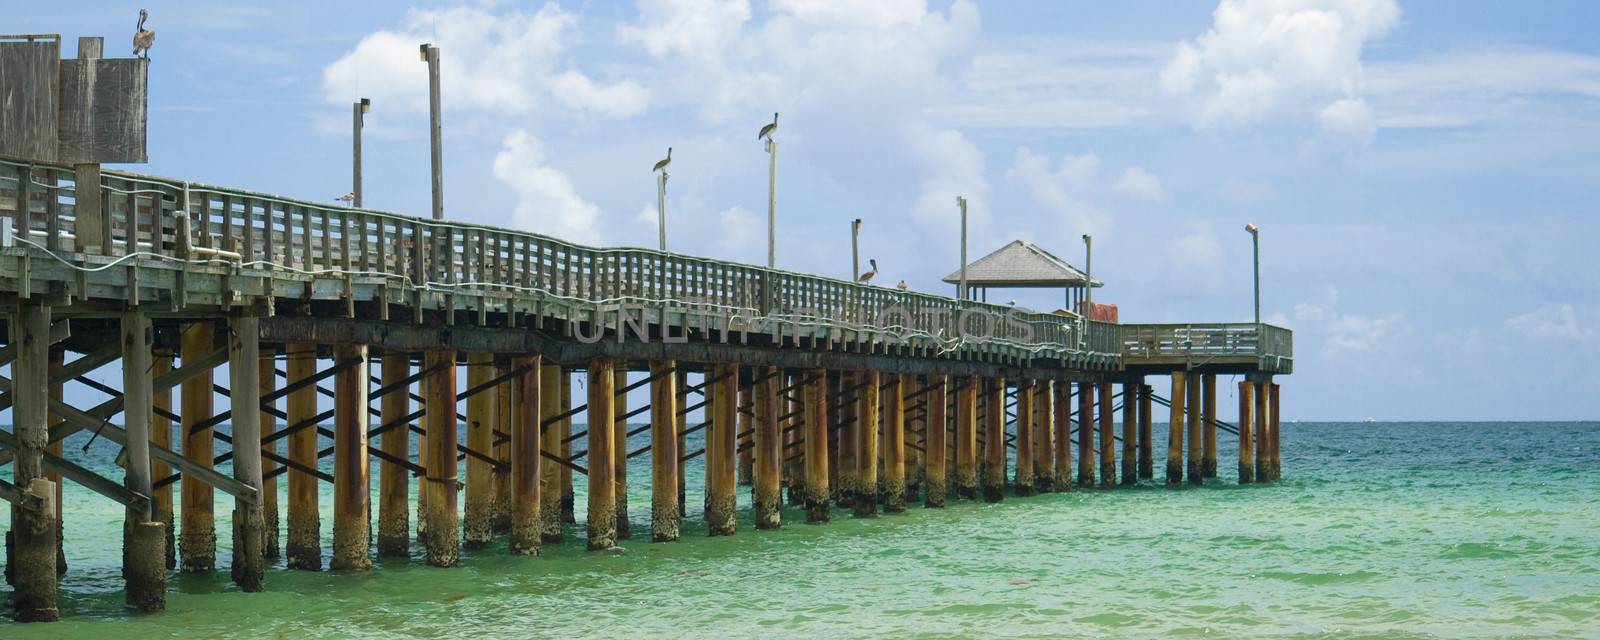 Miami pier  by CelsoDiniz